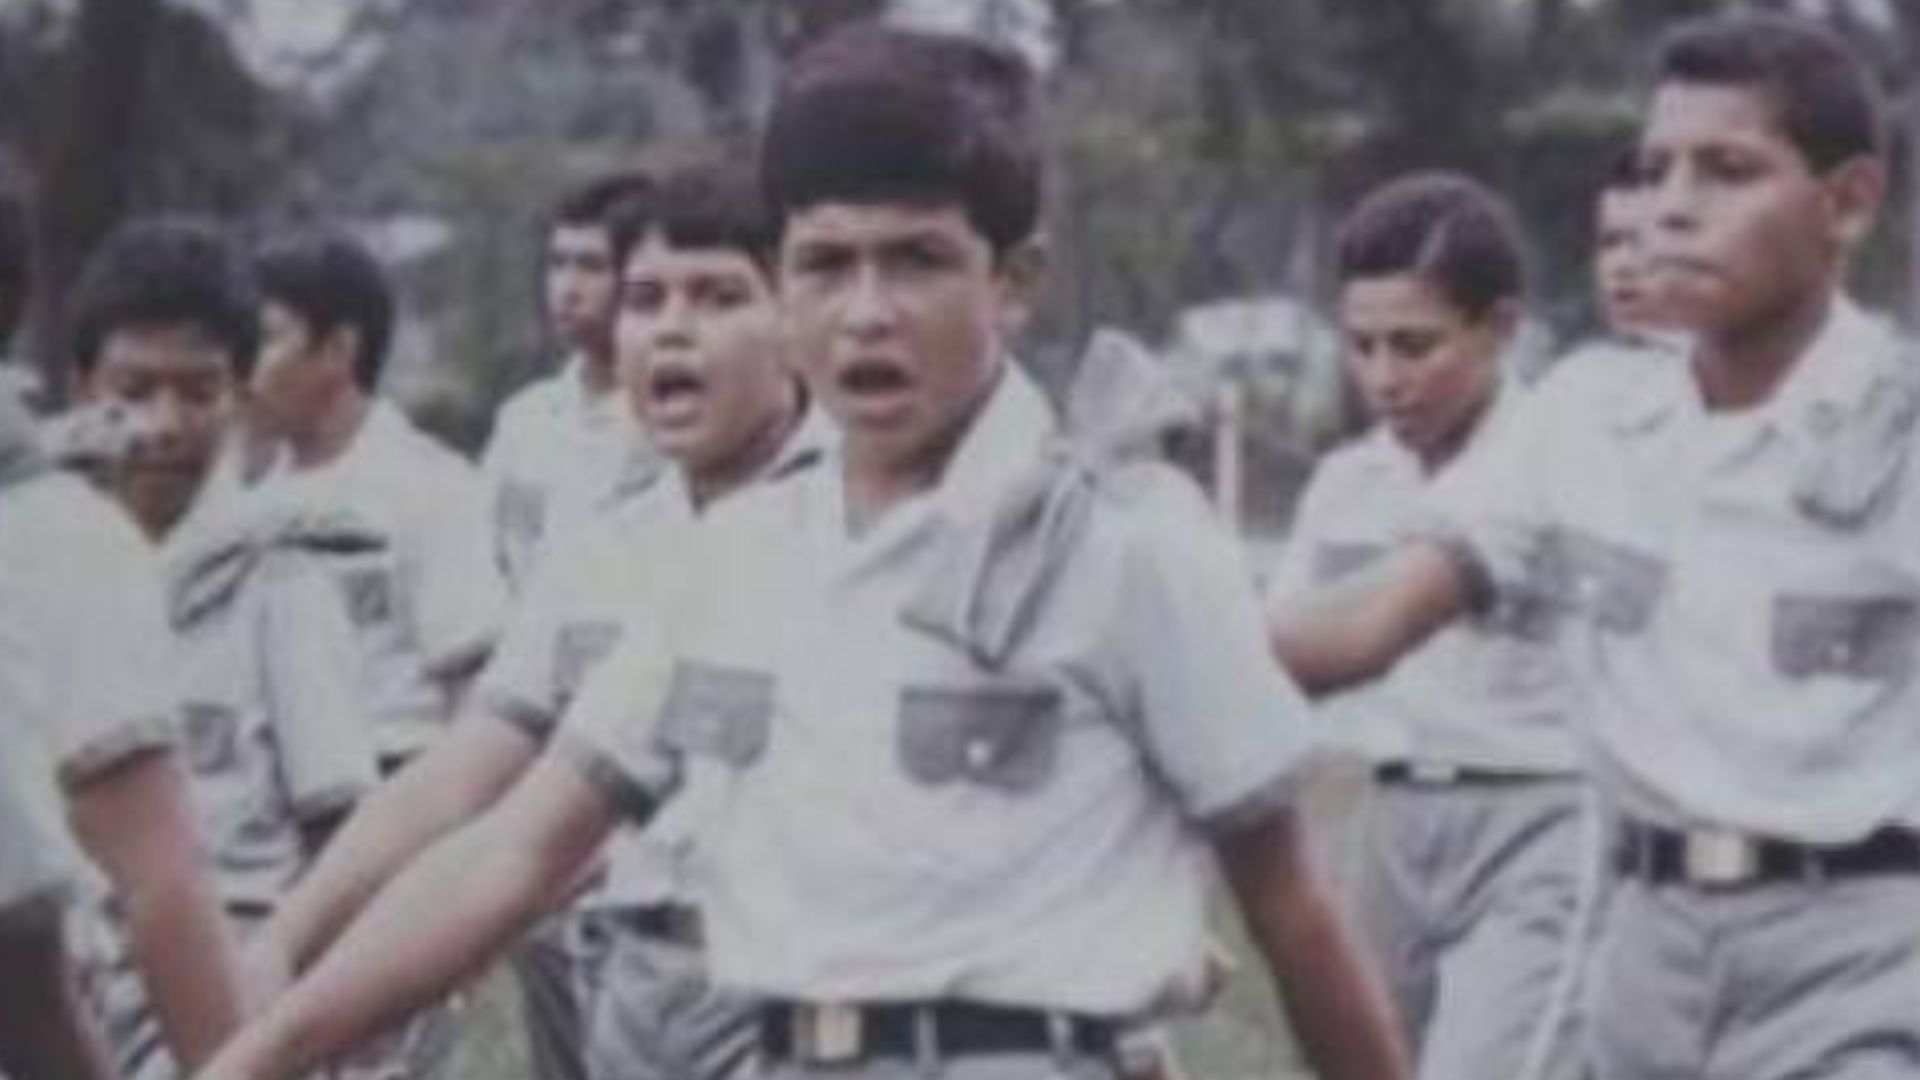 Juan Orlando Hernández cursó la secundaria en el Instituto Liceo Militar del Norte, situado en San Pedro Sula, donde nació su interés y afinidad por la milicia.